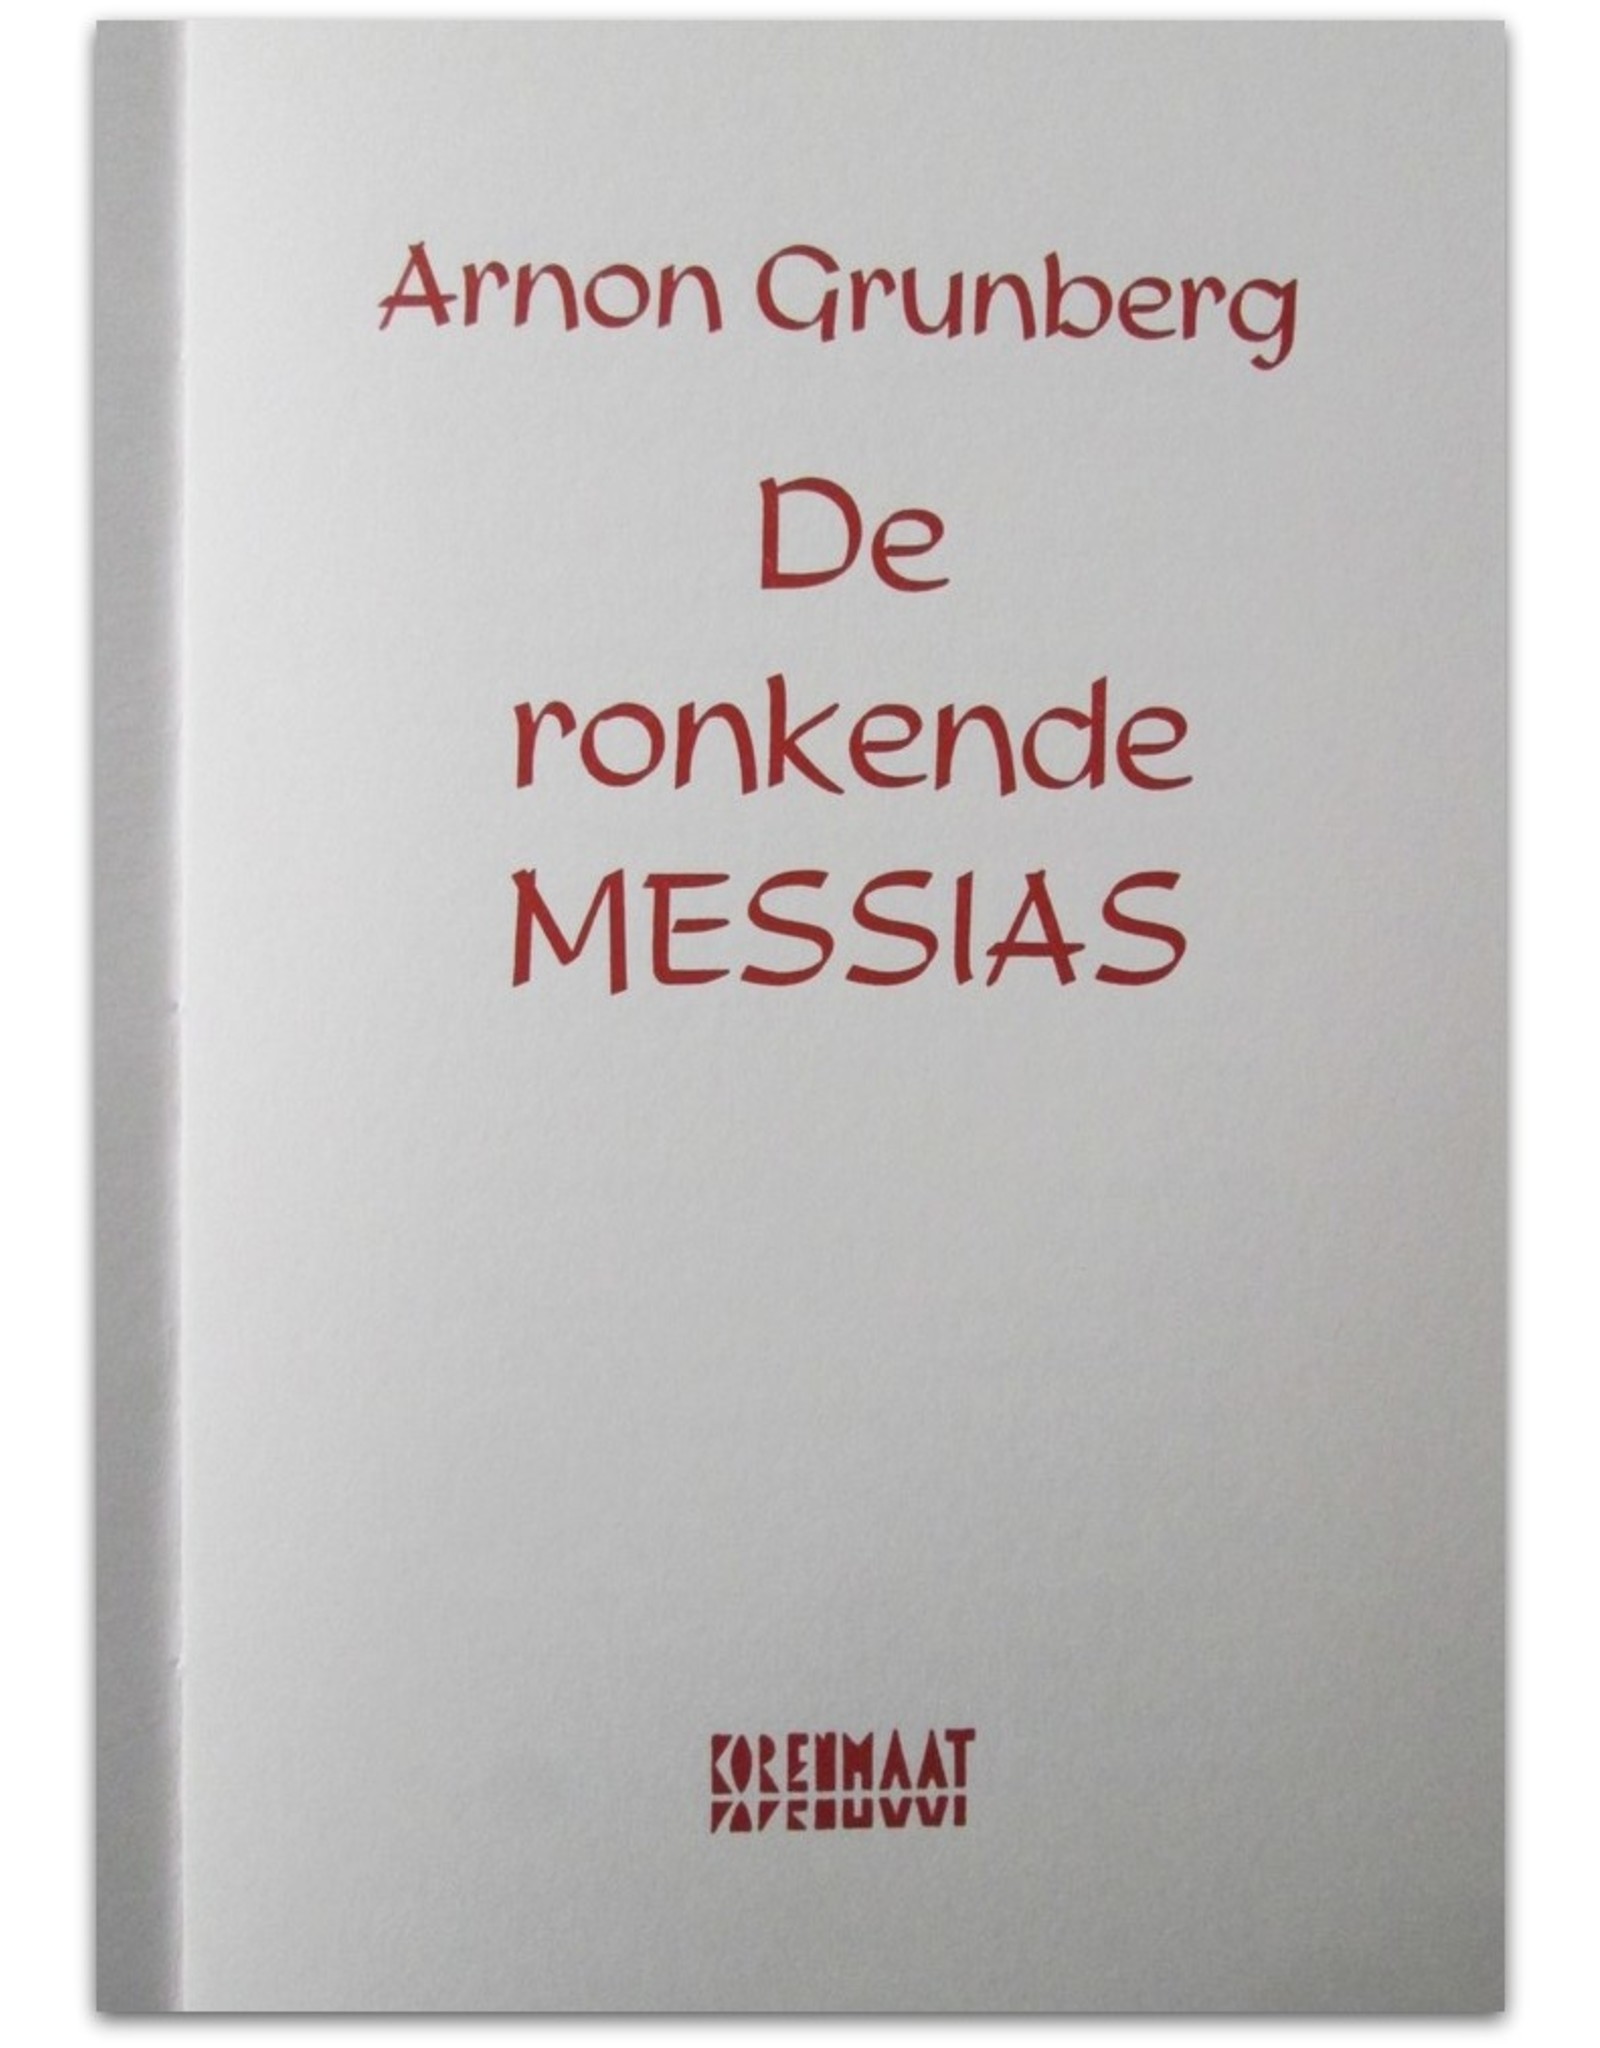 Arnon Grunberg - De ronkende Messias